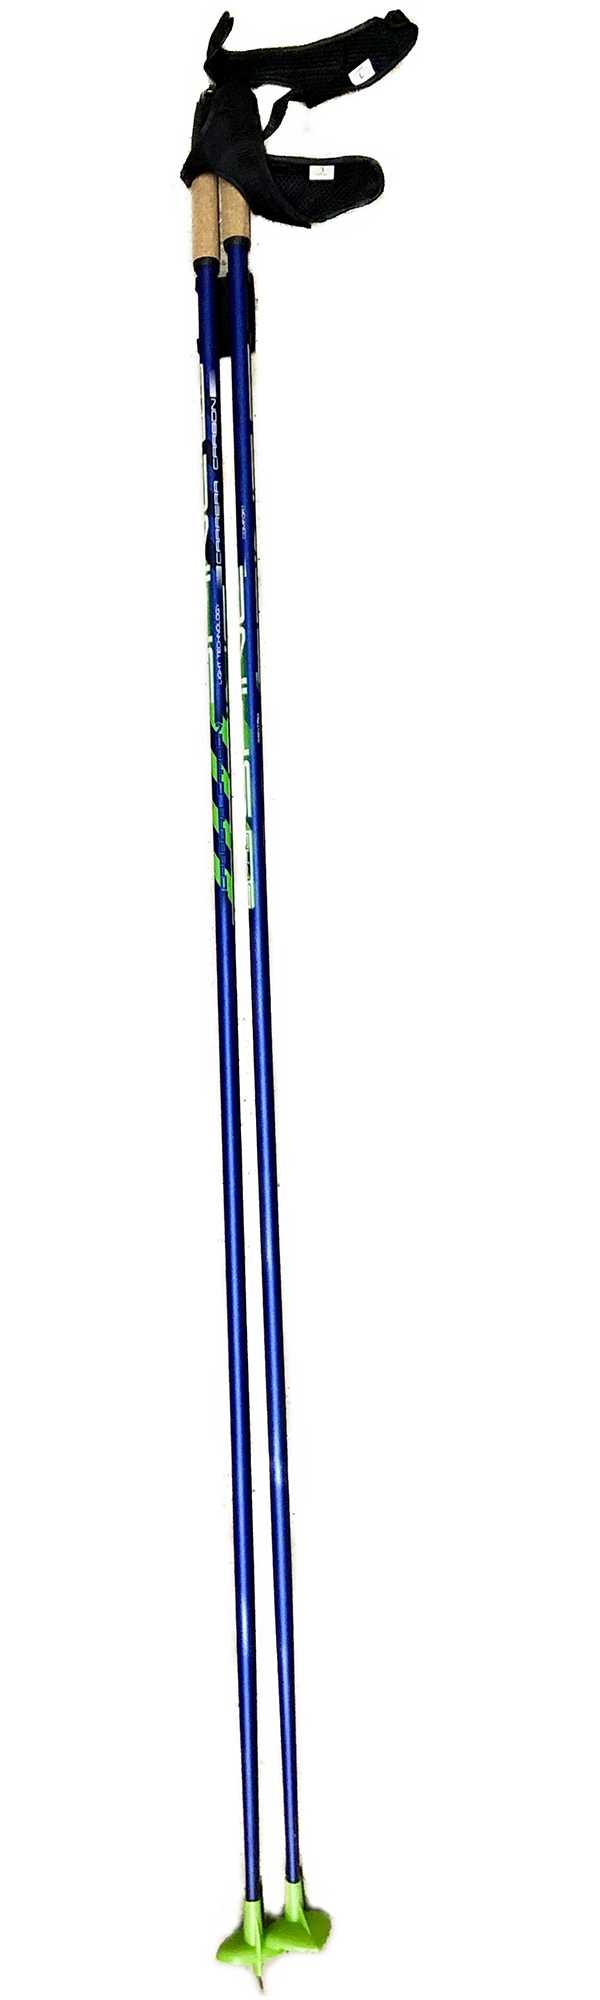 Палки лыжные SPINE Carrera Carbon  10016 1,60 м Сине-зеленый